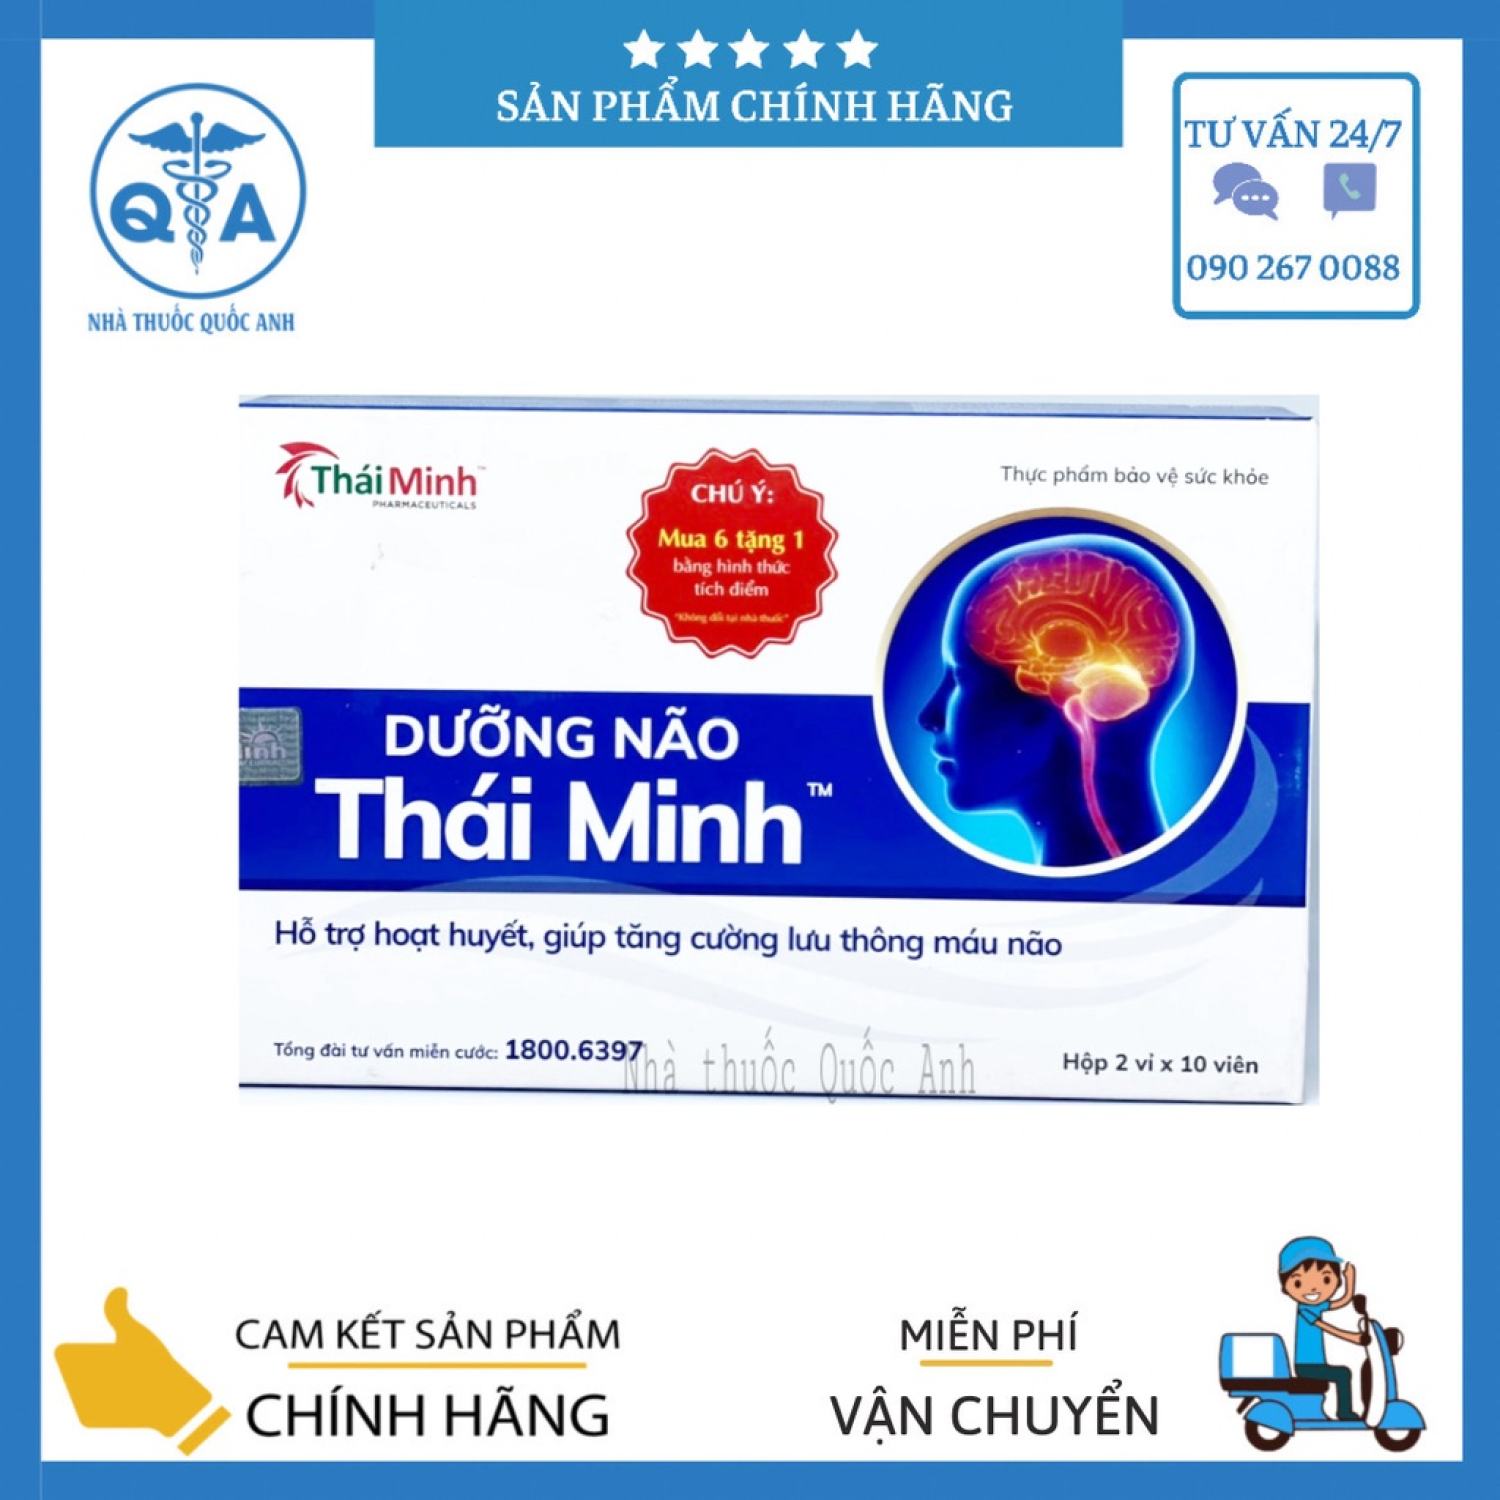 CHÍNH HÃNG MUA 6 TẶNG 1 Dưỡng Não Thái Minh - Hỗ Trợ Hoạt Huyết ,Giúp Tăng